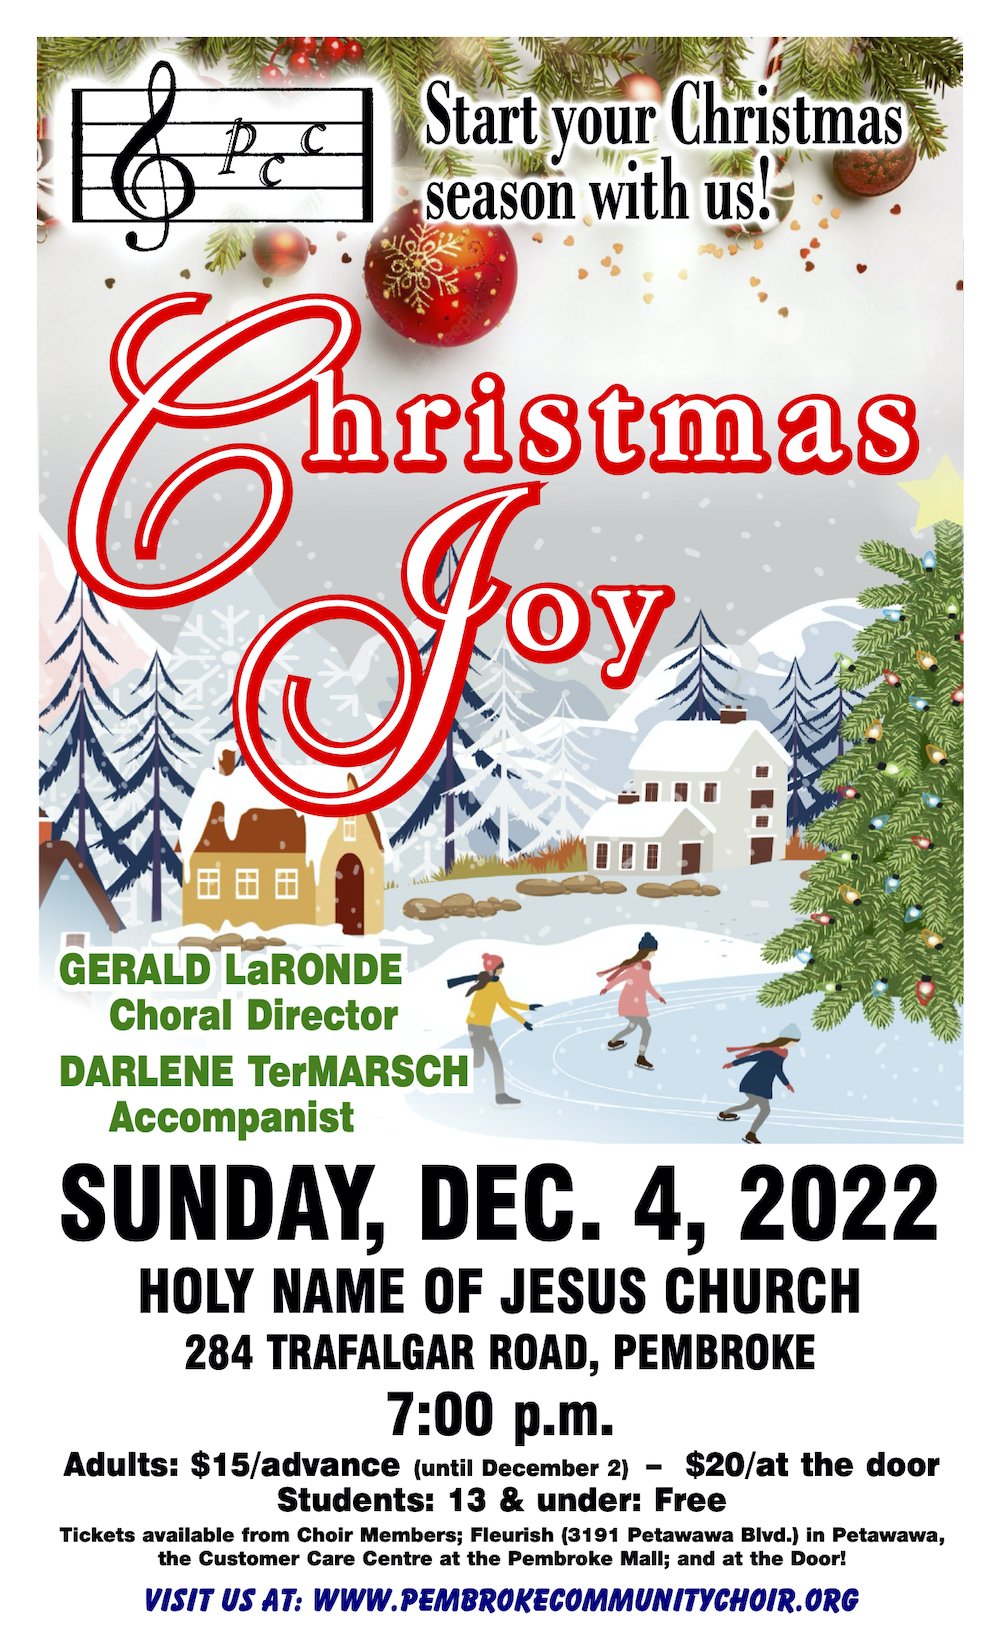 Christmas Choir concert on Sunday December 4th